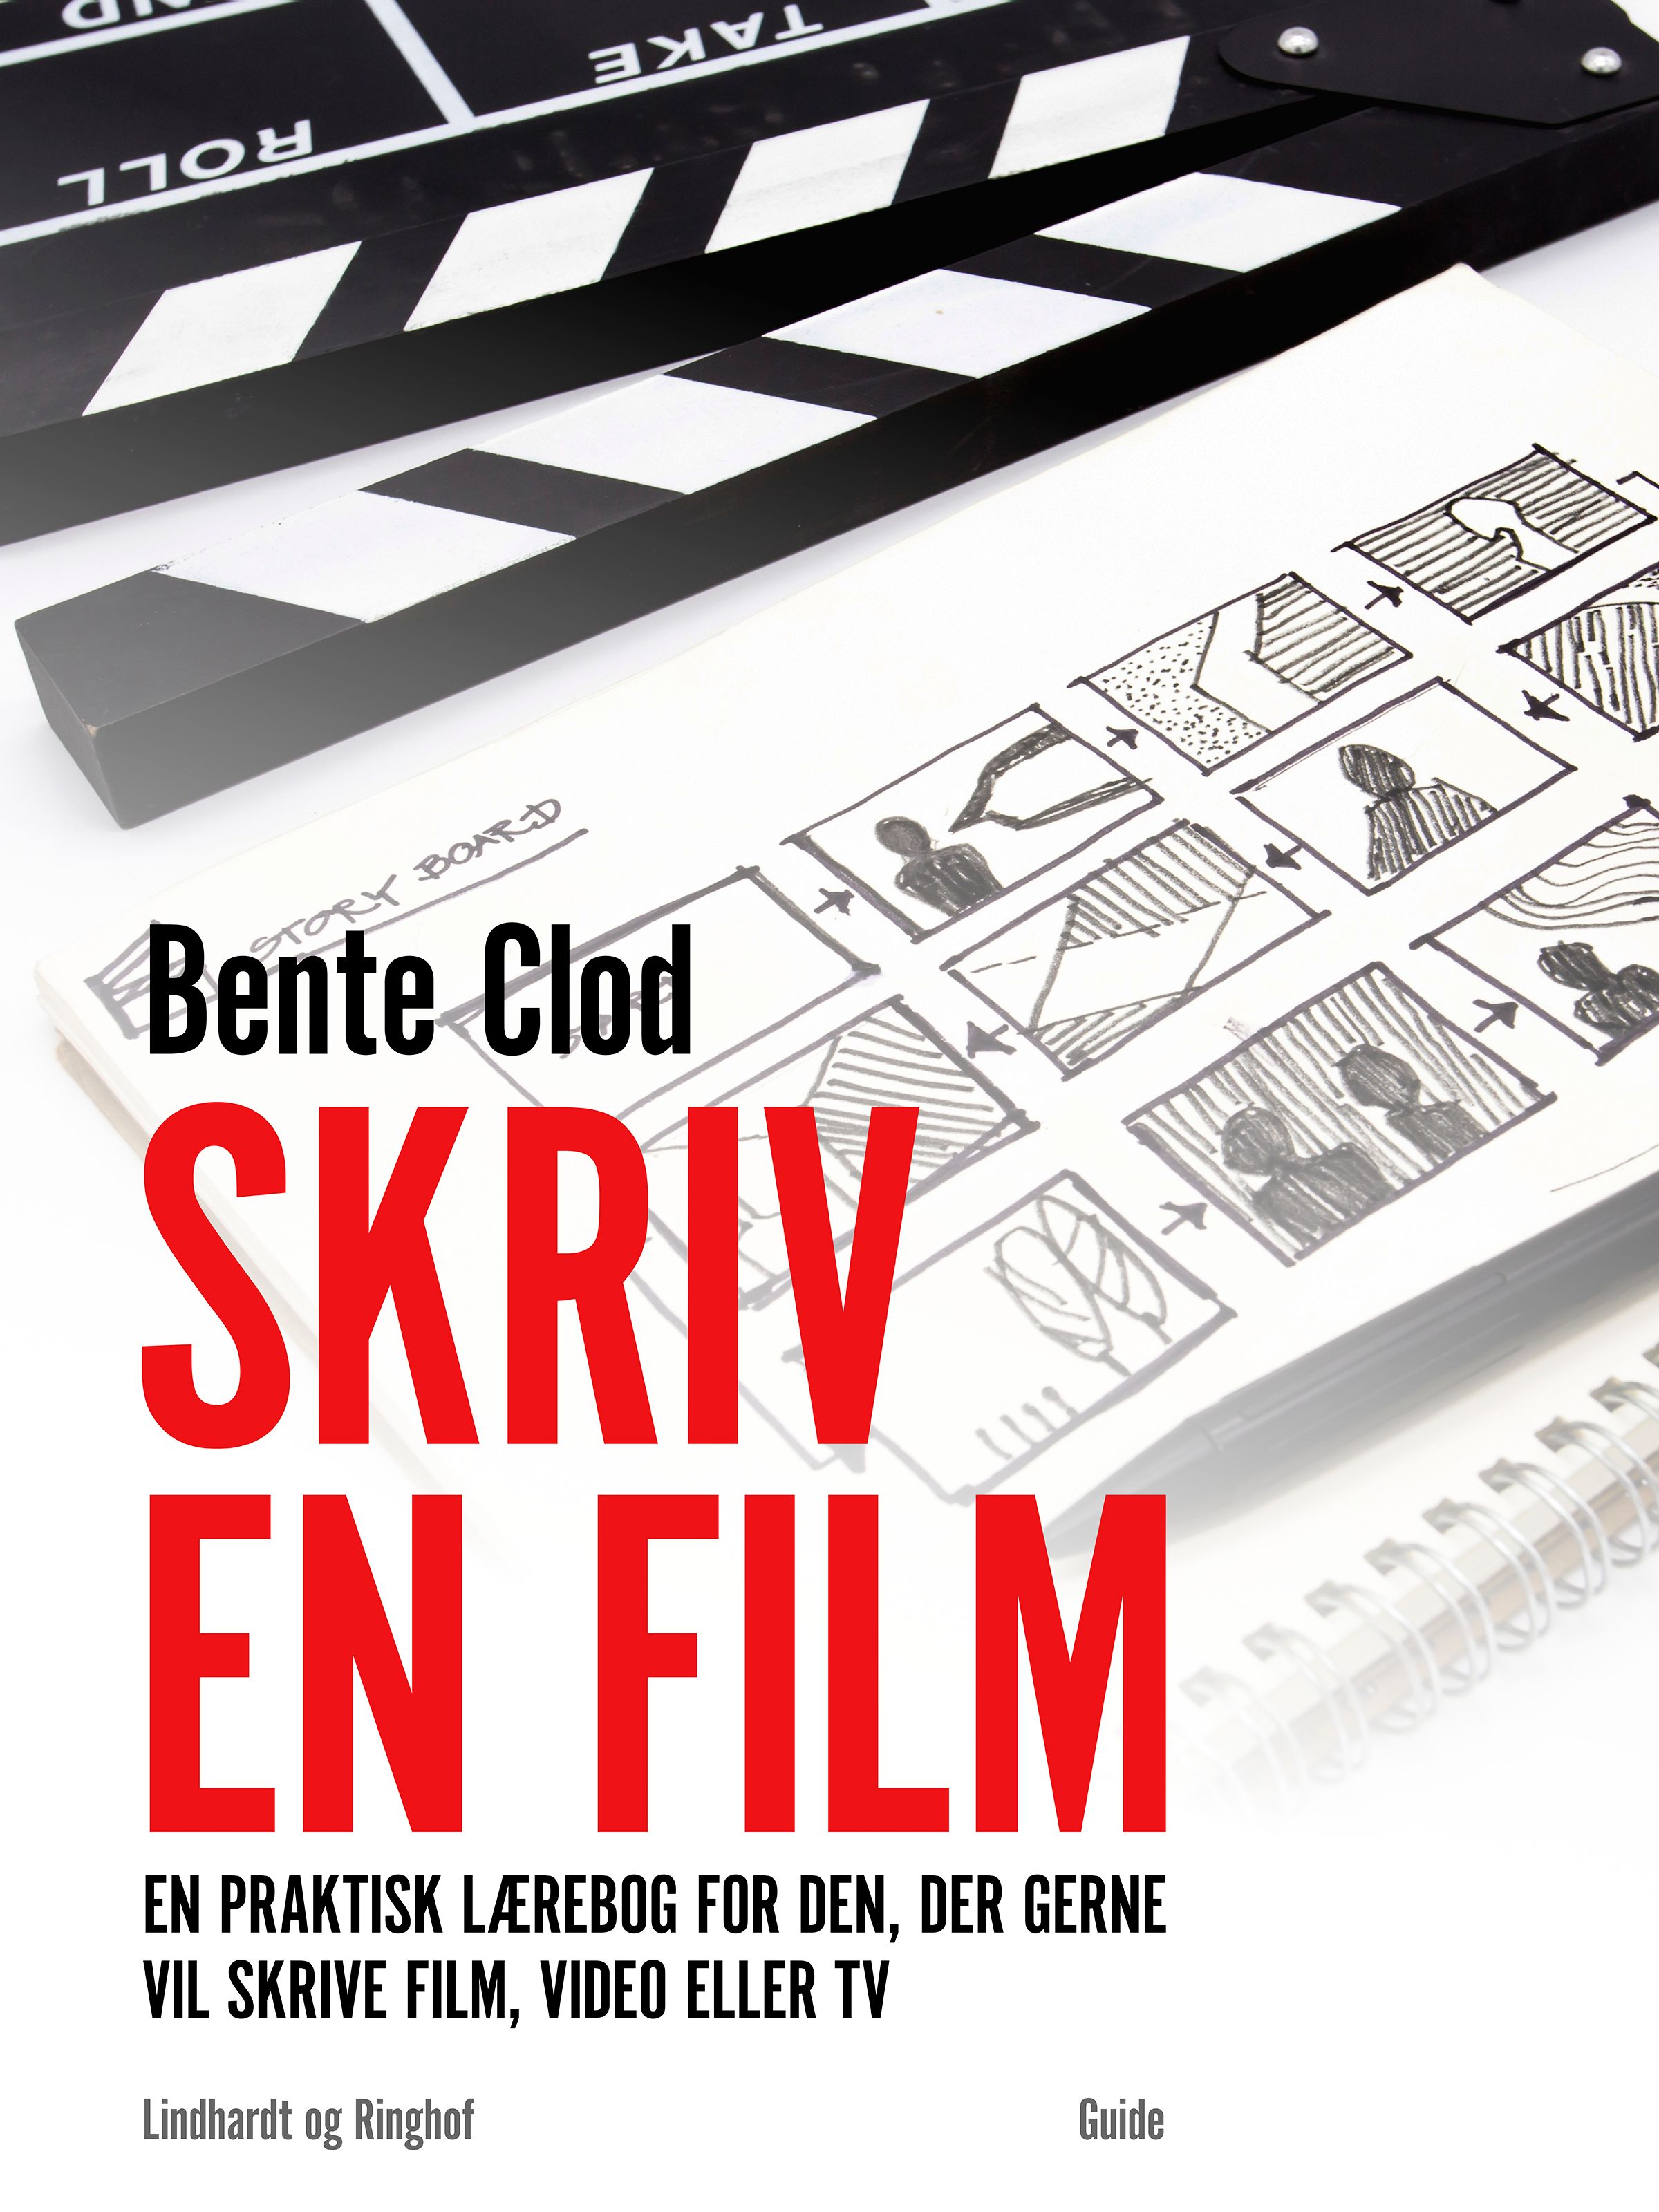 Skriv en film: En praktisk lærebog for den, der gerne vil skrive film, video eller tv, e-bog af Bente Clod